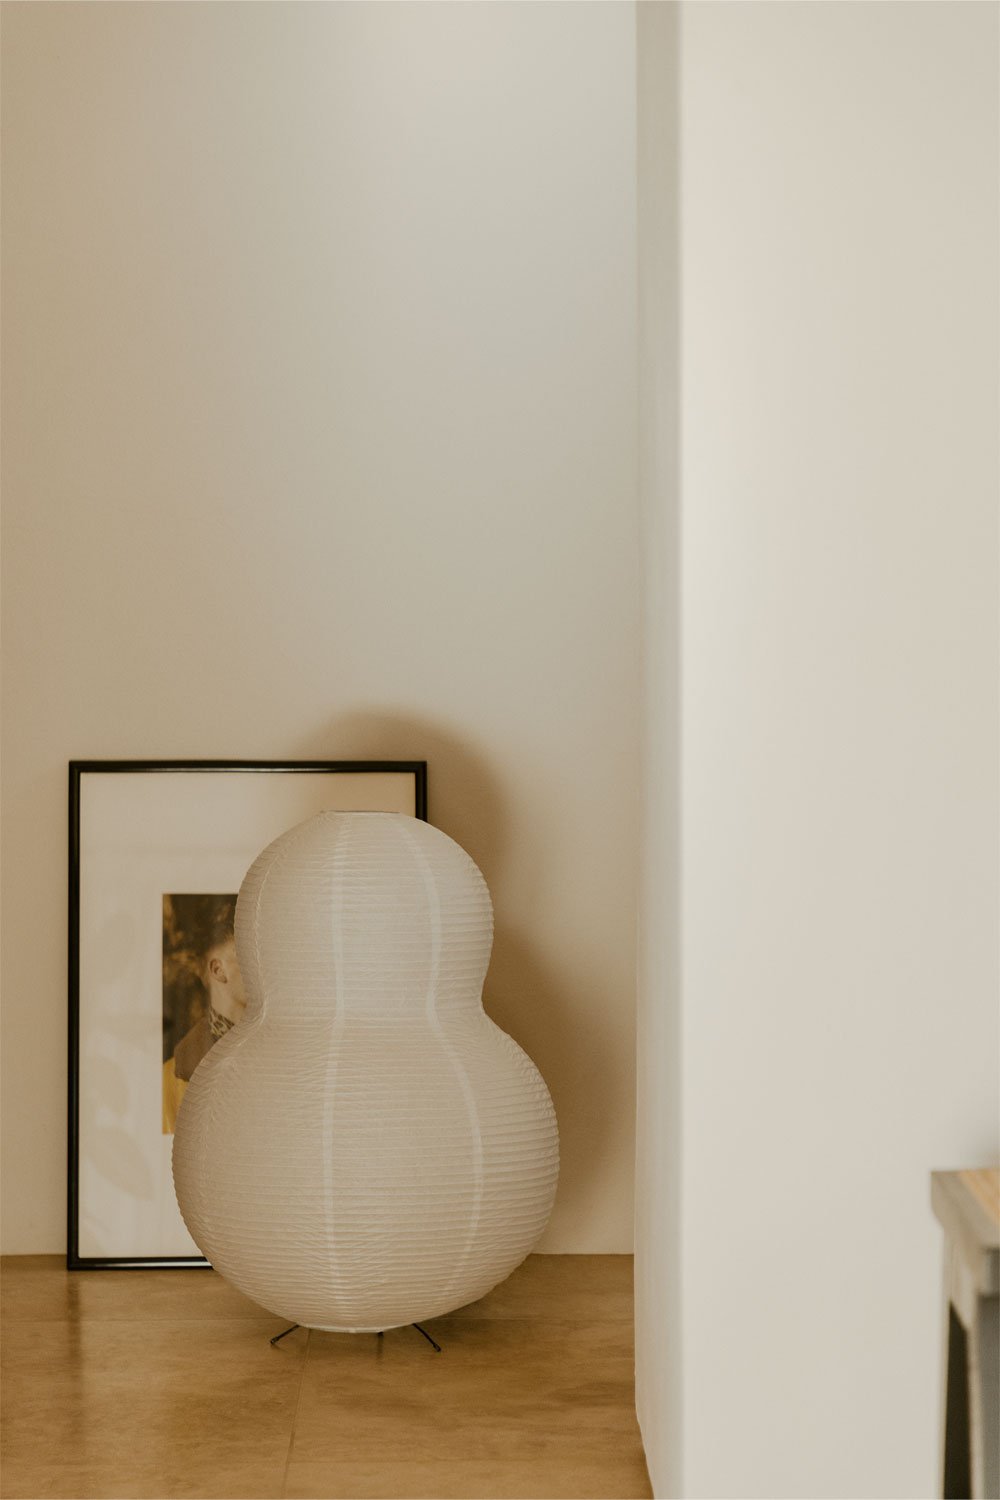 Lampa podłogowa z papieru ryżowego (↑73 cm) Marlier, obrazek w galerii 1